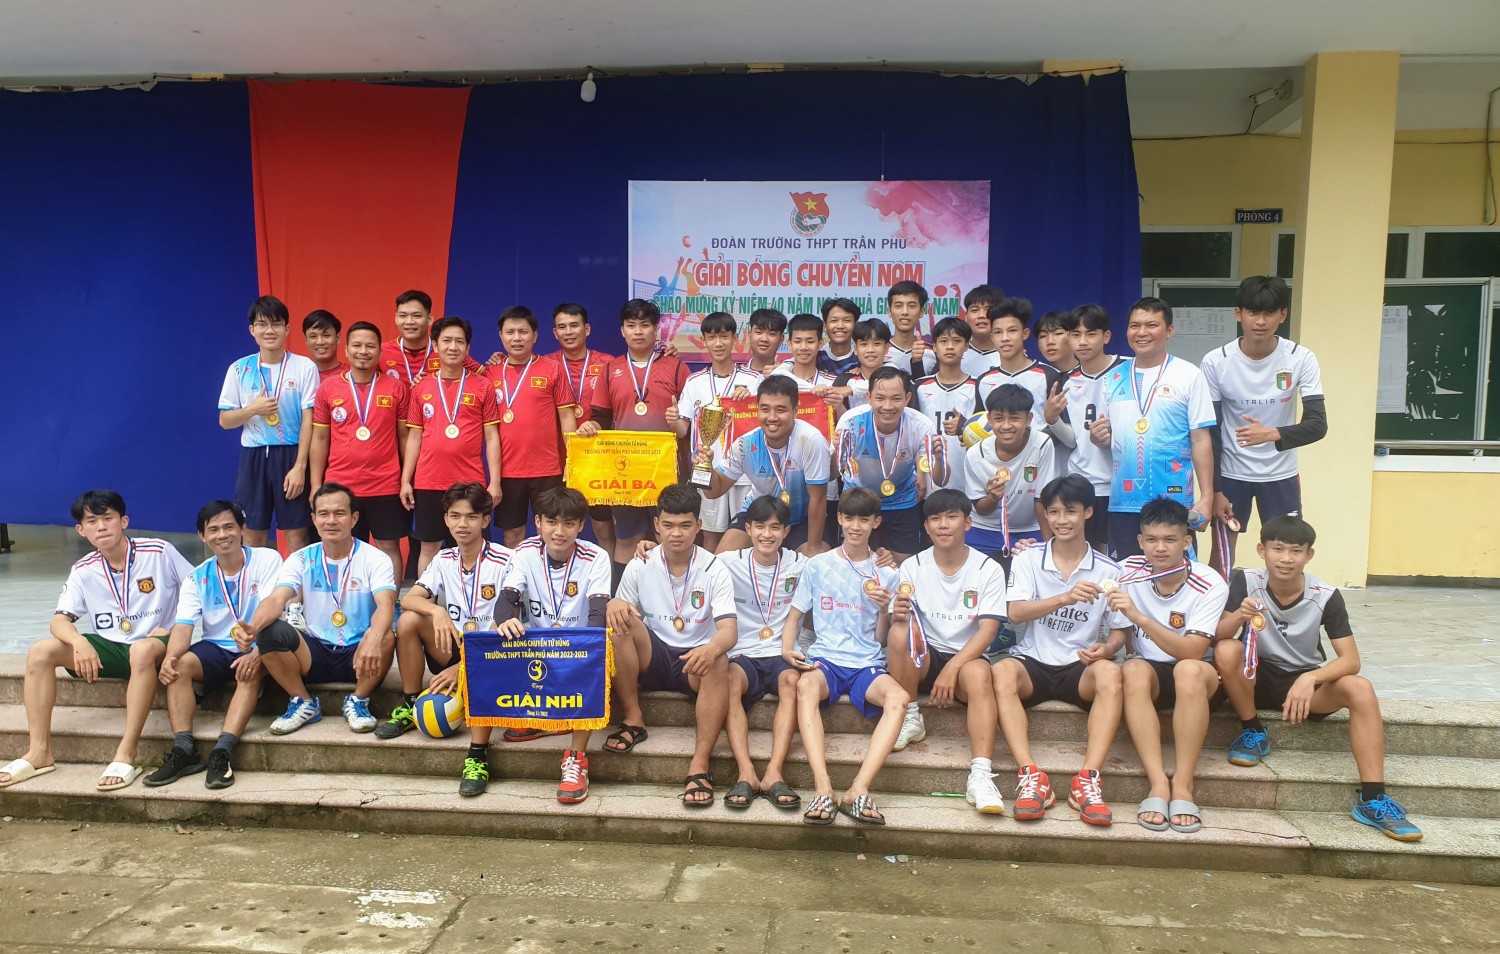 Đoàn trường tổ chức thành công giải bóng chuyền nam chào mừng kỷ niệm 40 năm ngày Nhà giáo Việt Nam